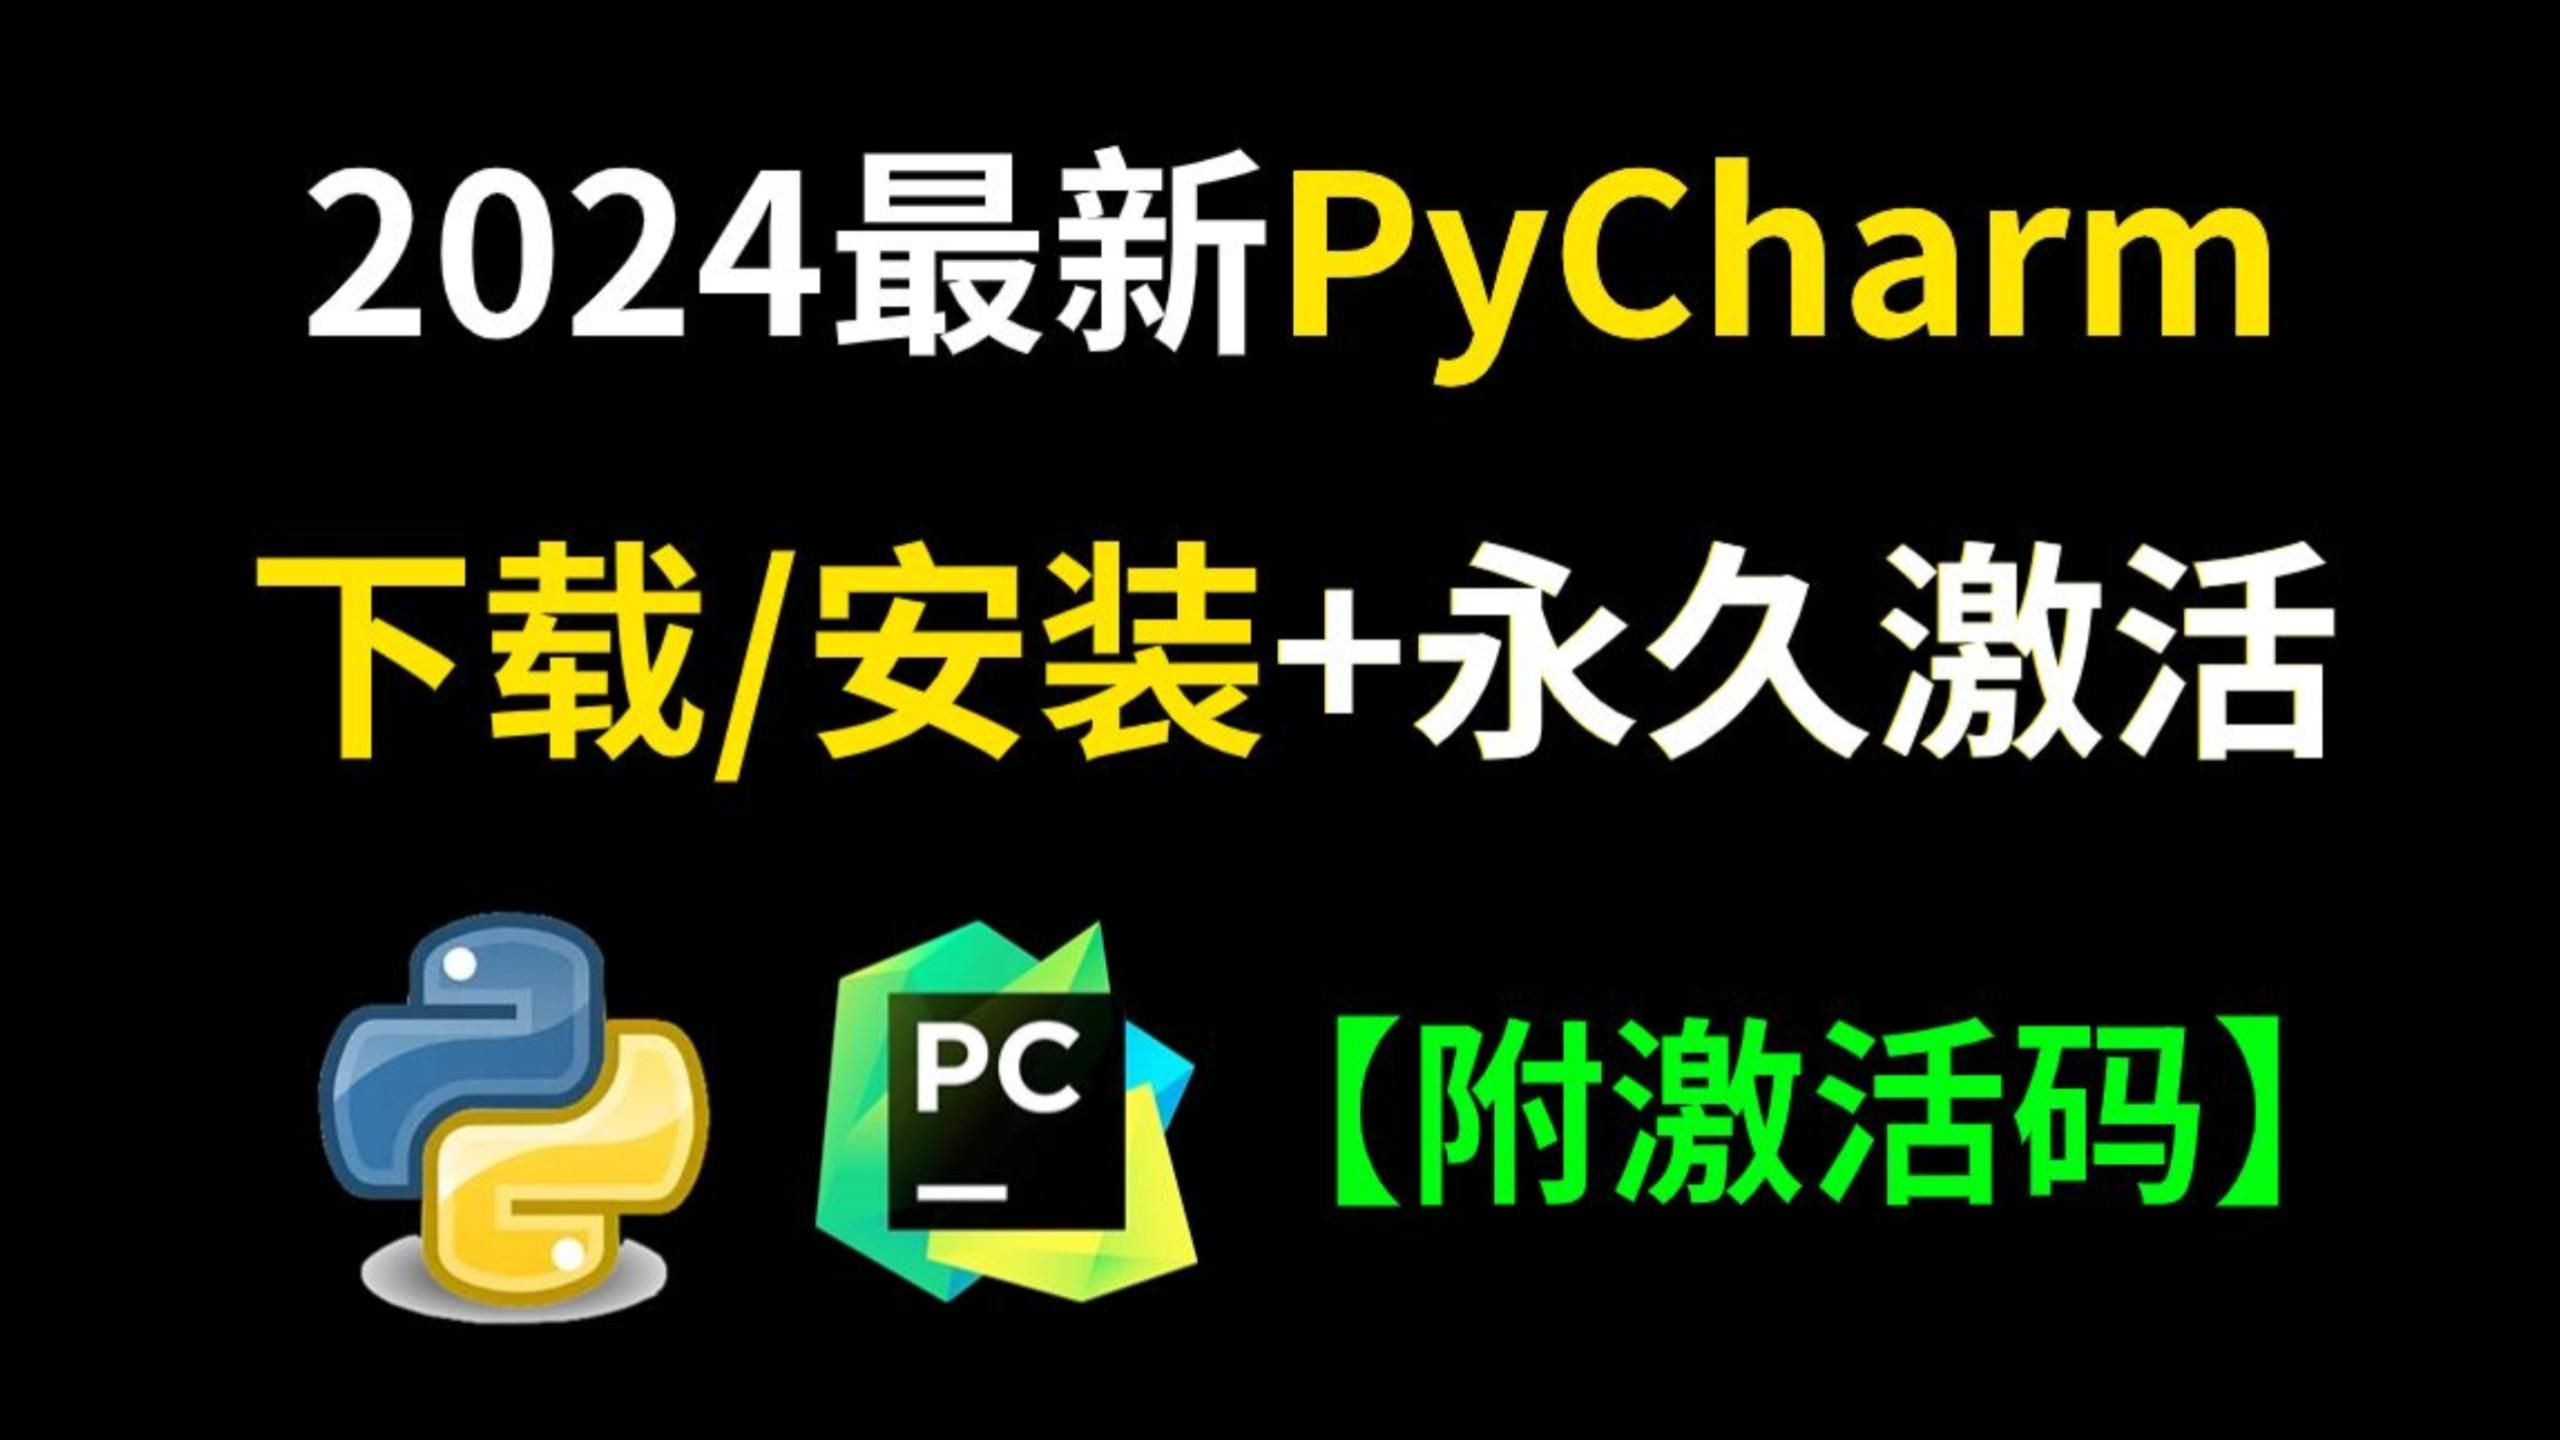 2024年新版Python+Pycharm安装激活教程，附安装激活破解工具包，一键激活，永久使用，编程类软件必安装，Pycharm安装激活